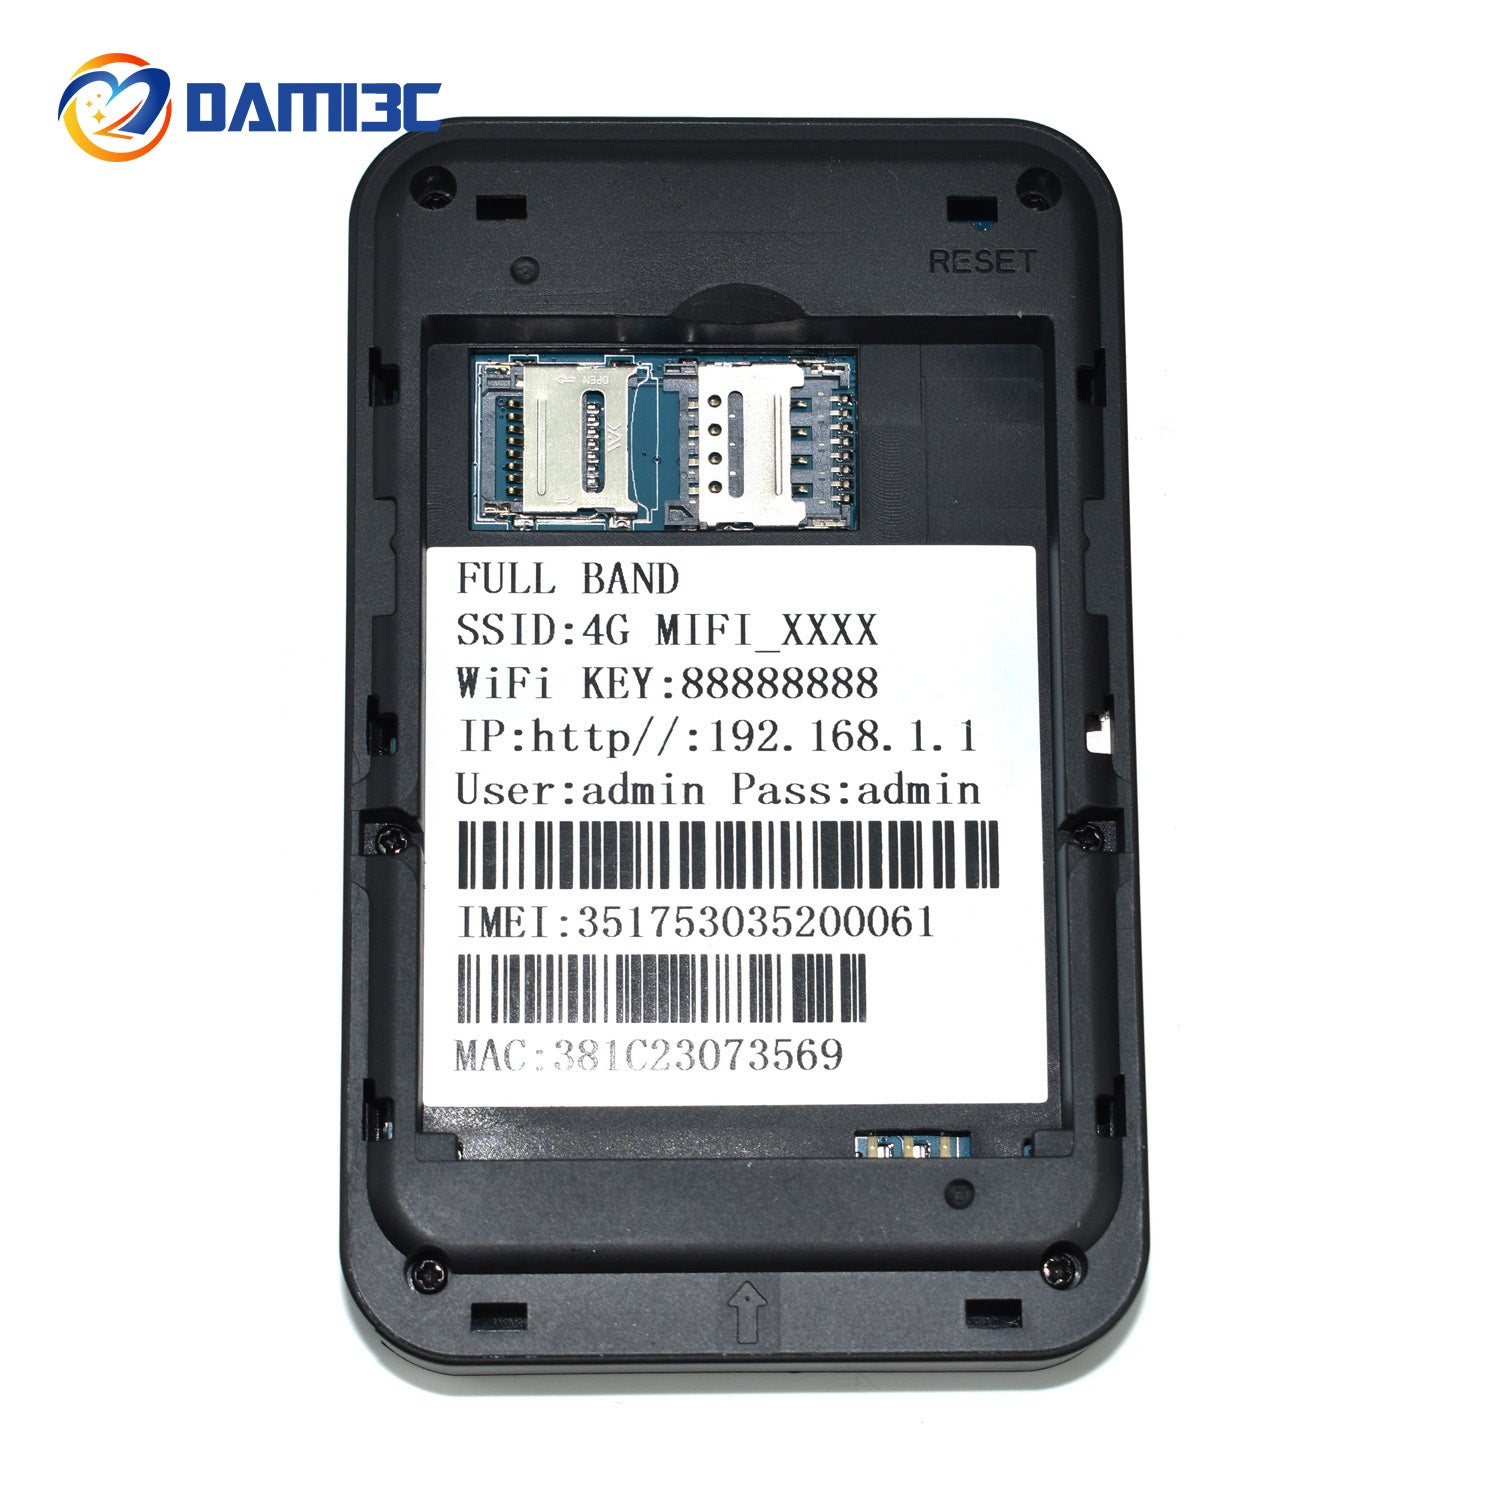 R905 Pocket WIFI Power Bank 2 in 1